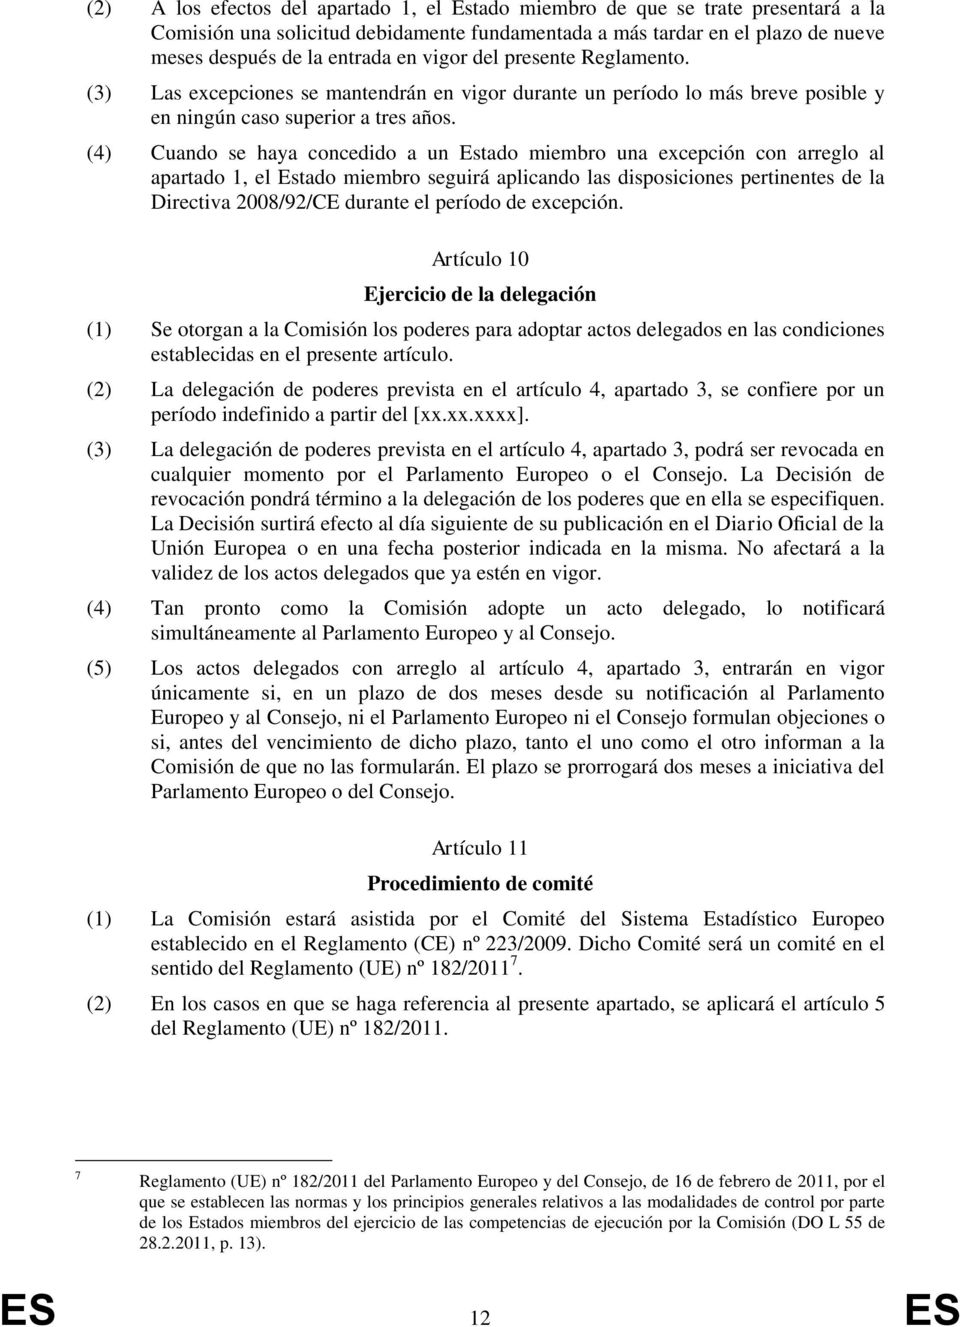 (4) Cuando se haya concedido a un Estado miembro una excepción con arreglo al apartado 1, el Estado miembro seguirá aplicando las disposiciones pertinentes de la Directiva 2008/92/CE durante el